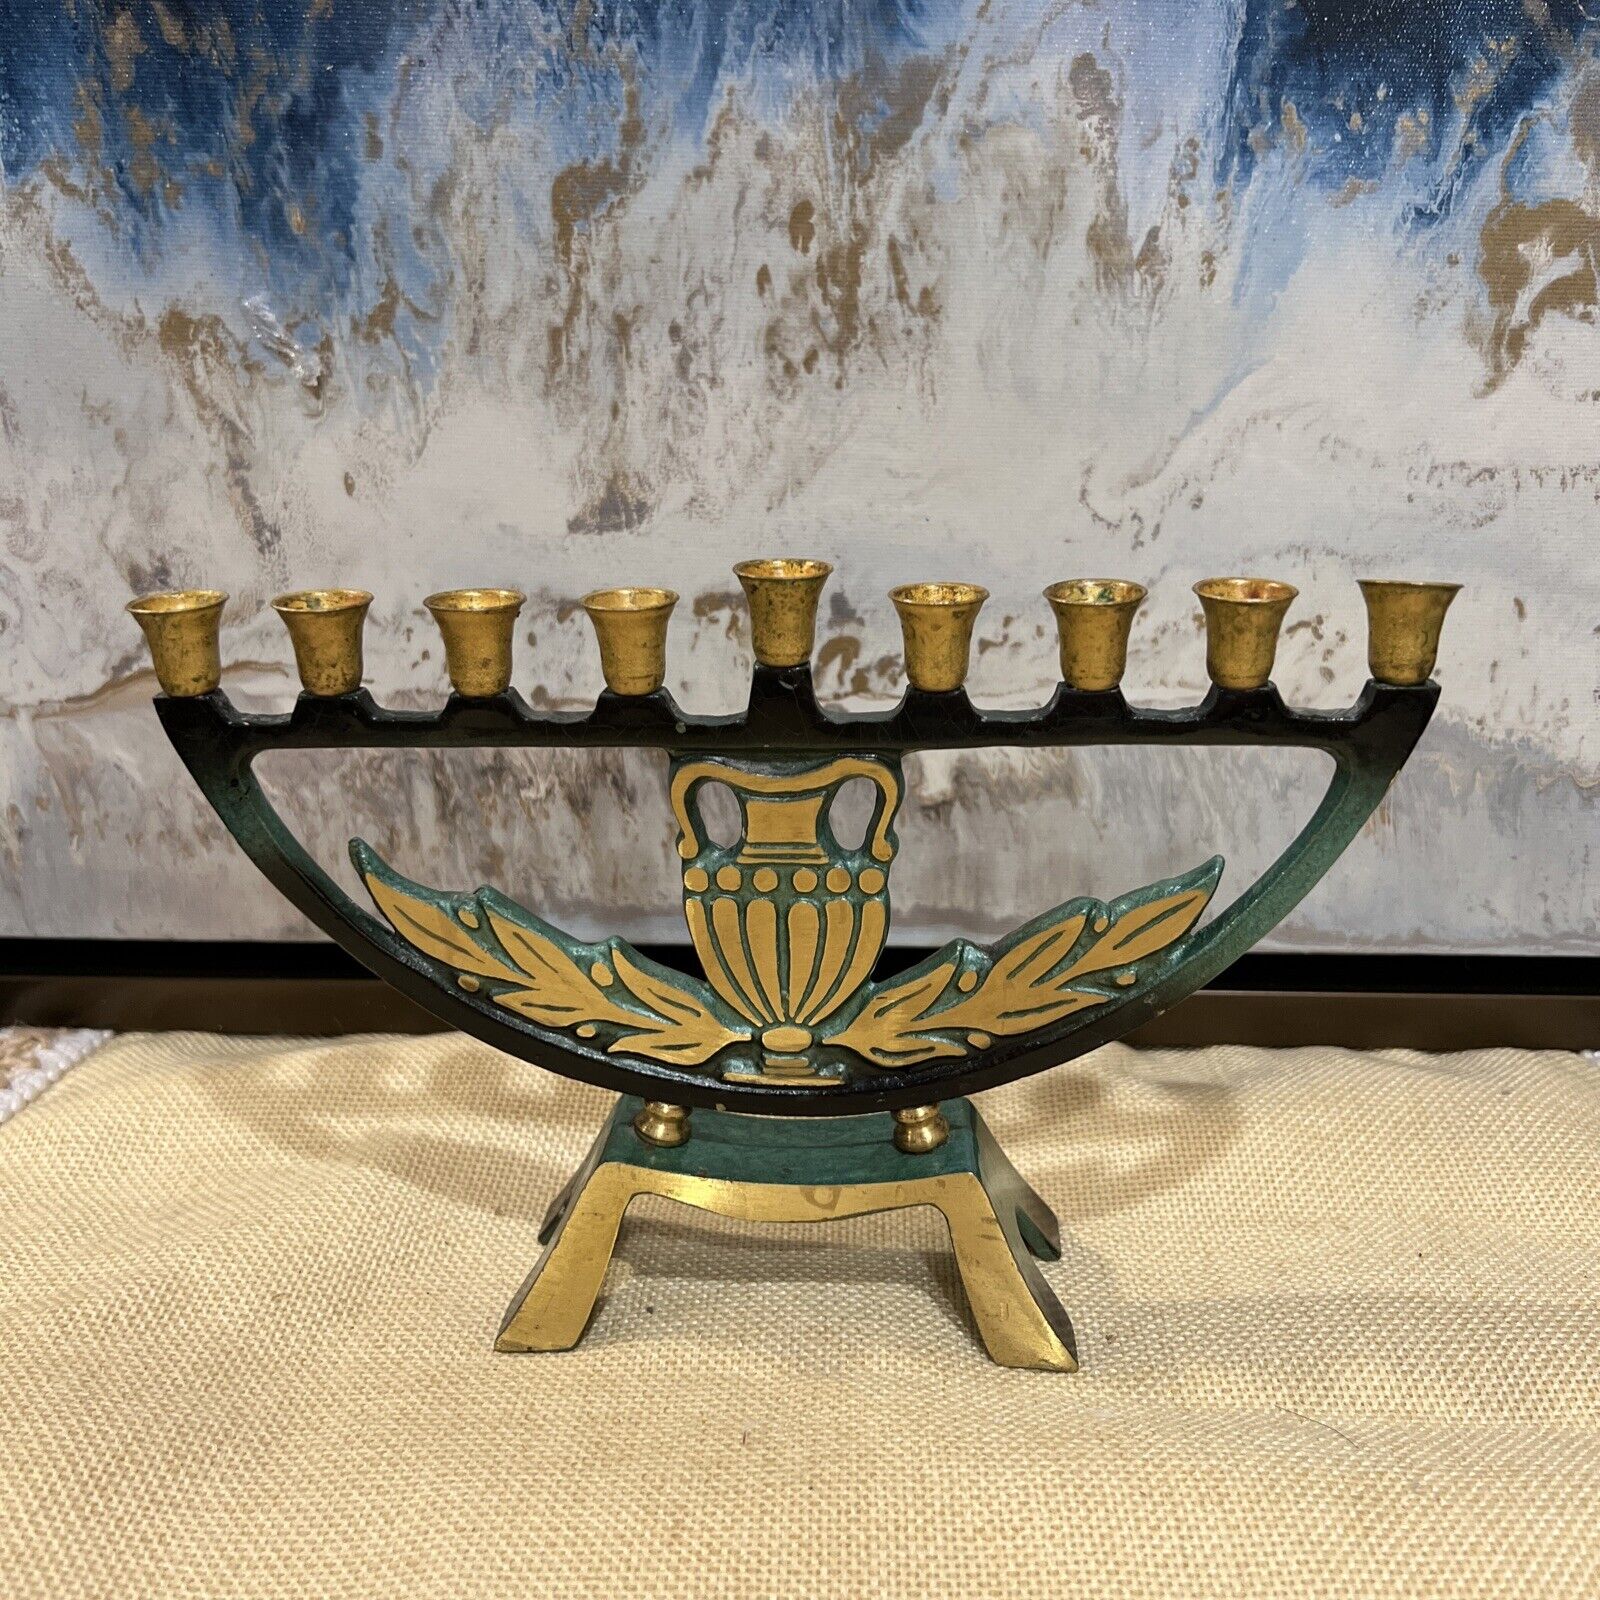 Vintage Dayagi Brass Enamel Menorah Hanukkah Judaism Candle Made In Israel 8”x5”